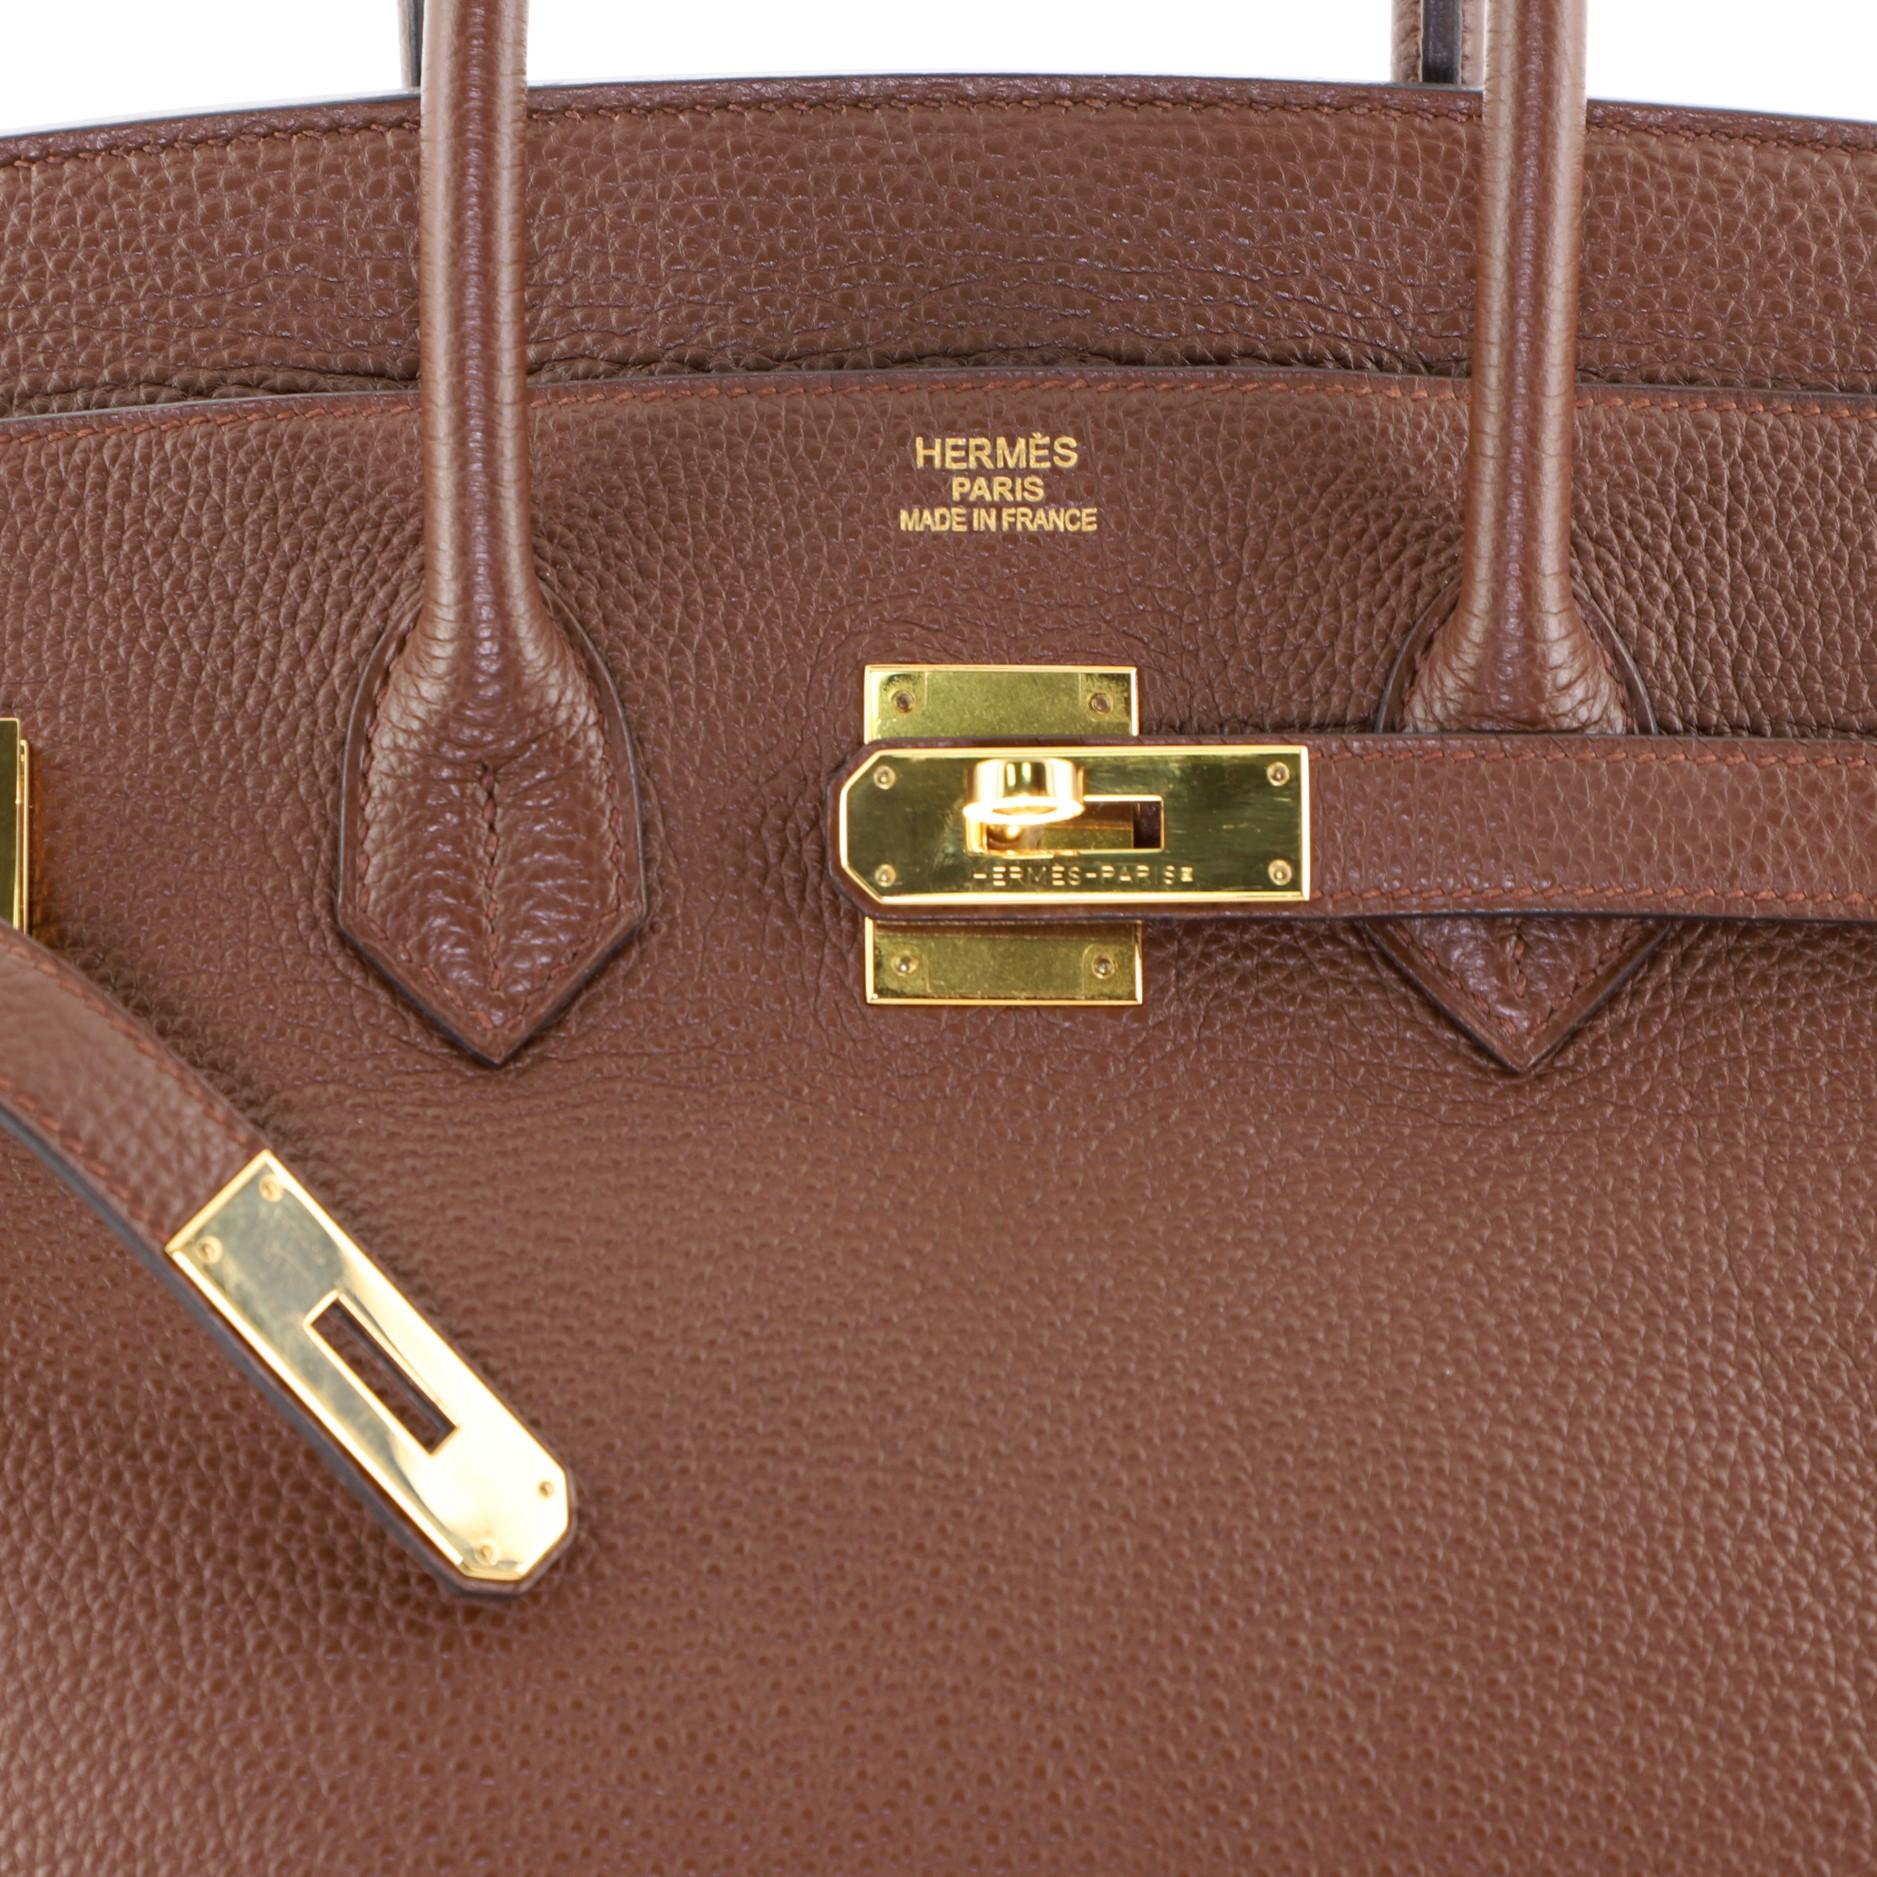 Hermes Birkin Handbag Brulee Togo with Gold Hardware 35 1